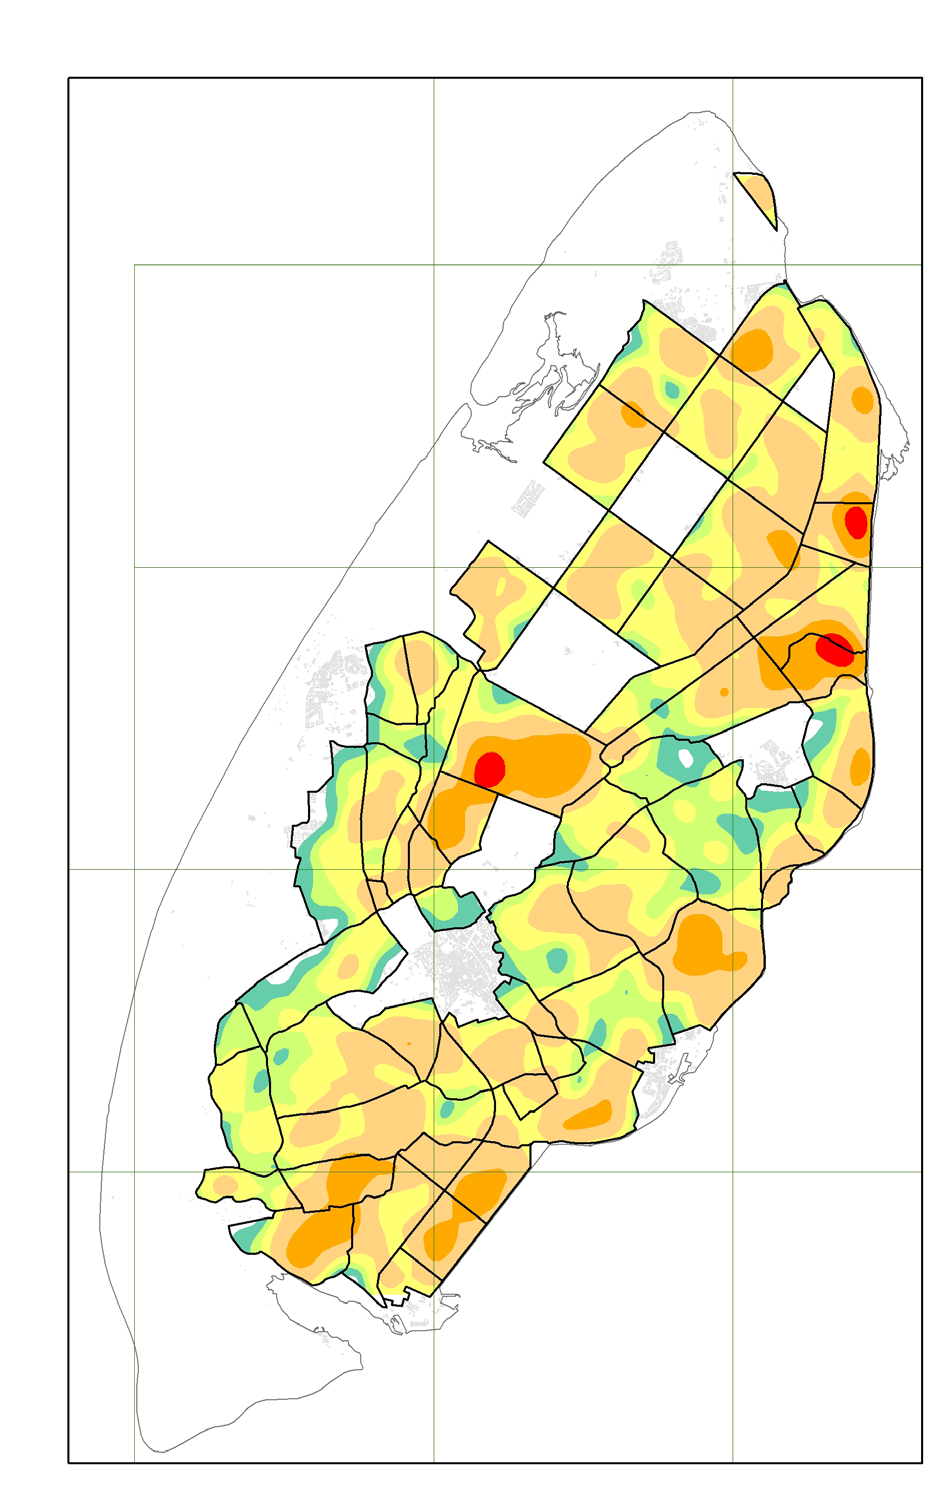 kunnen brengen. Veldleeuwerik heeft in 2015 op Texel met aanzienlijk aantal gebroed. In juni werden er al 70 broedpaar vastgesteld, een aantal wat in Noord-Holland al lang niet meer is geteld (mmd. R.